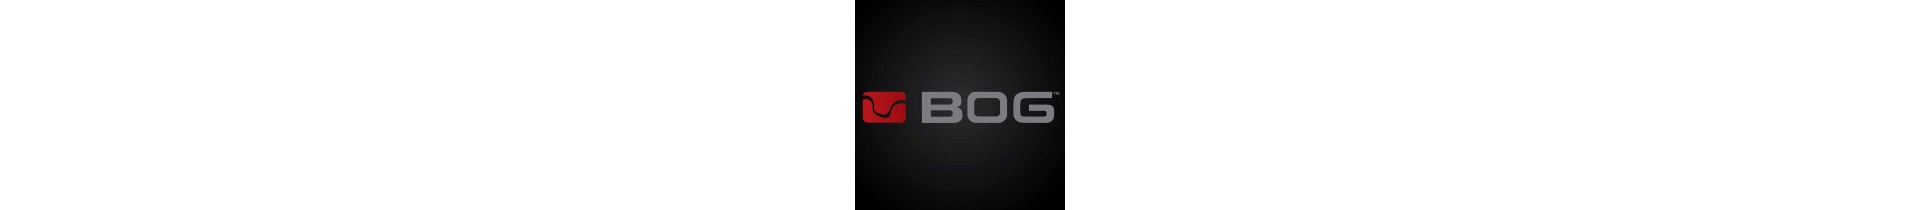 Retrouvez sur www.tactirshop.fr toute la gamme des produits de chez BOG